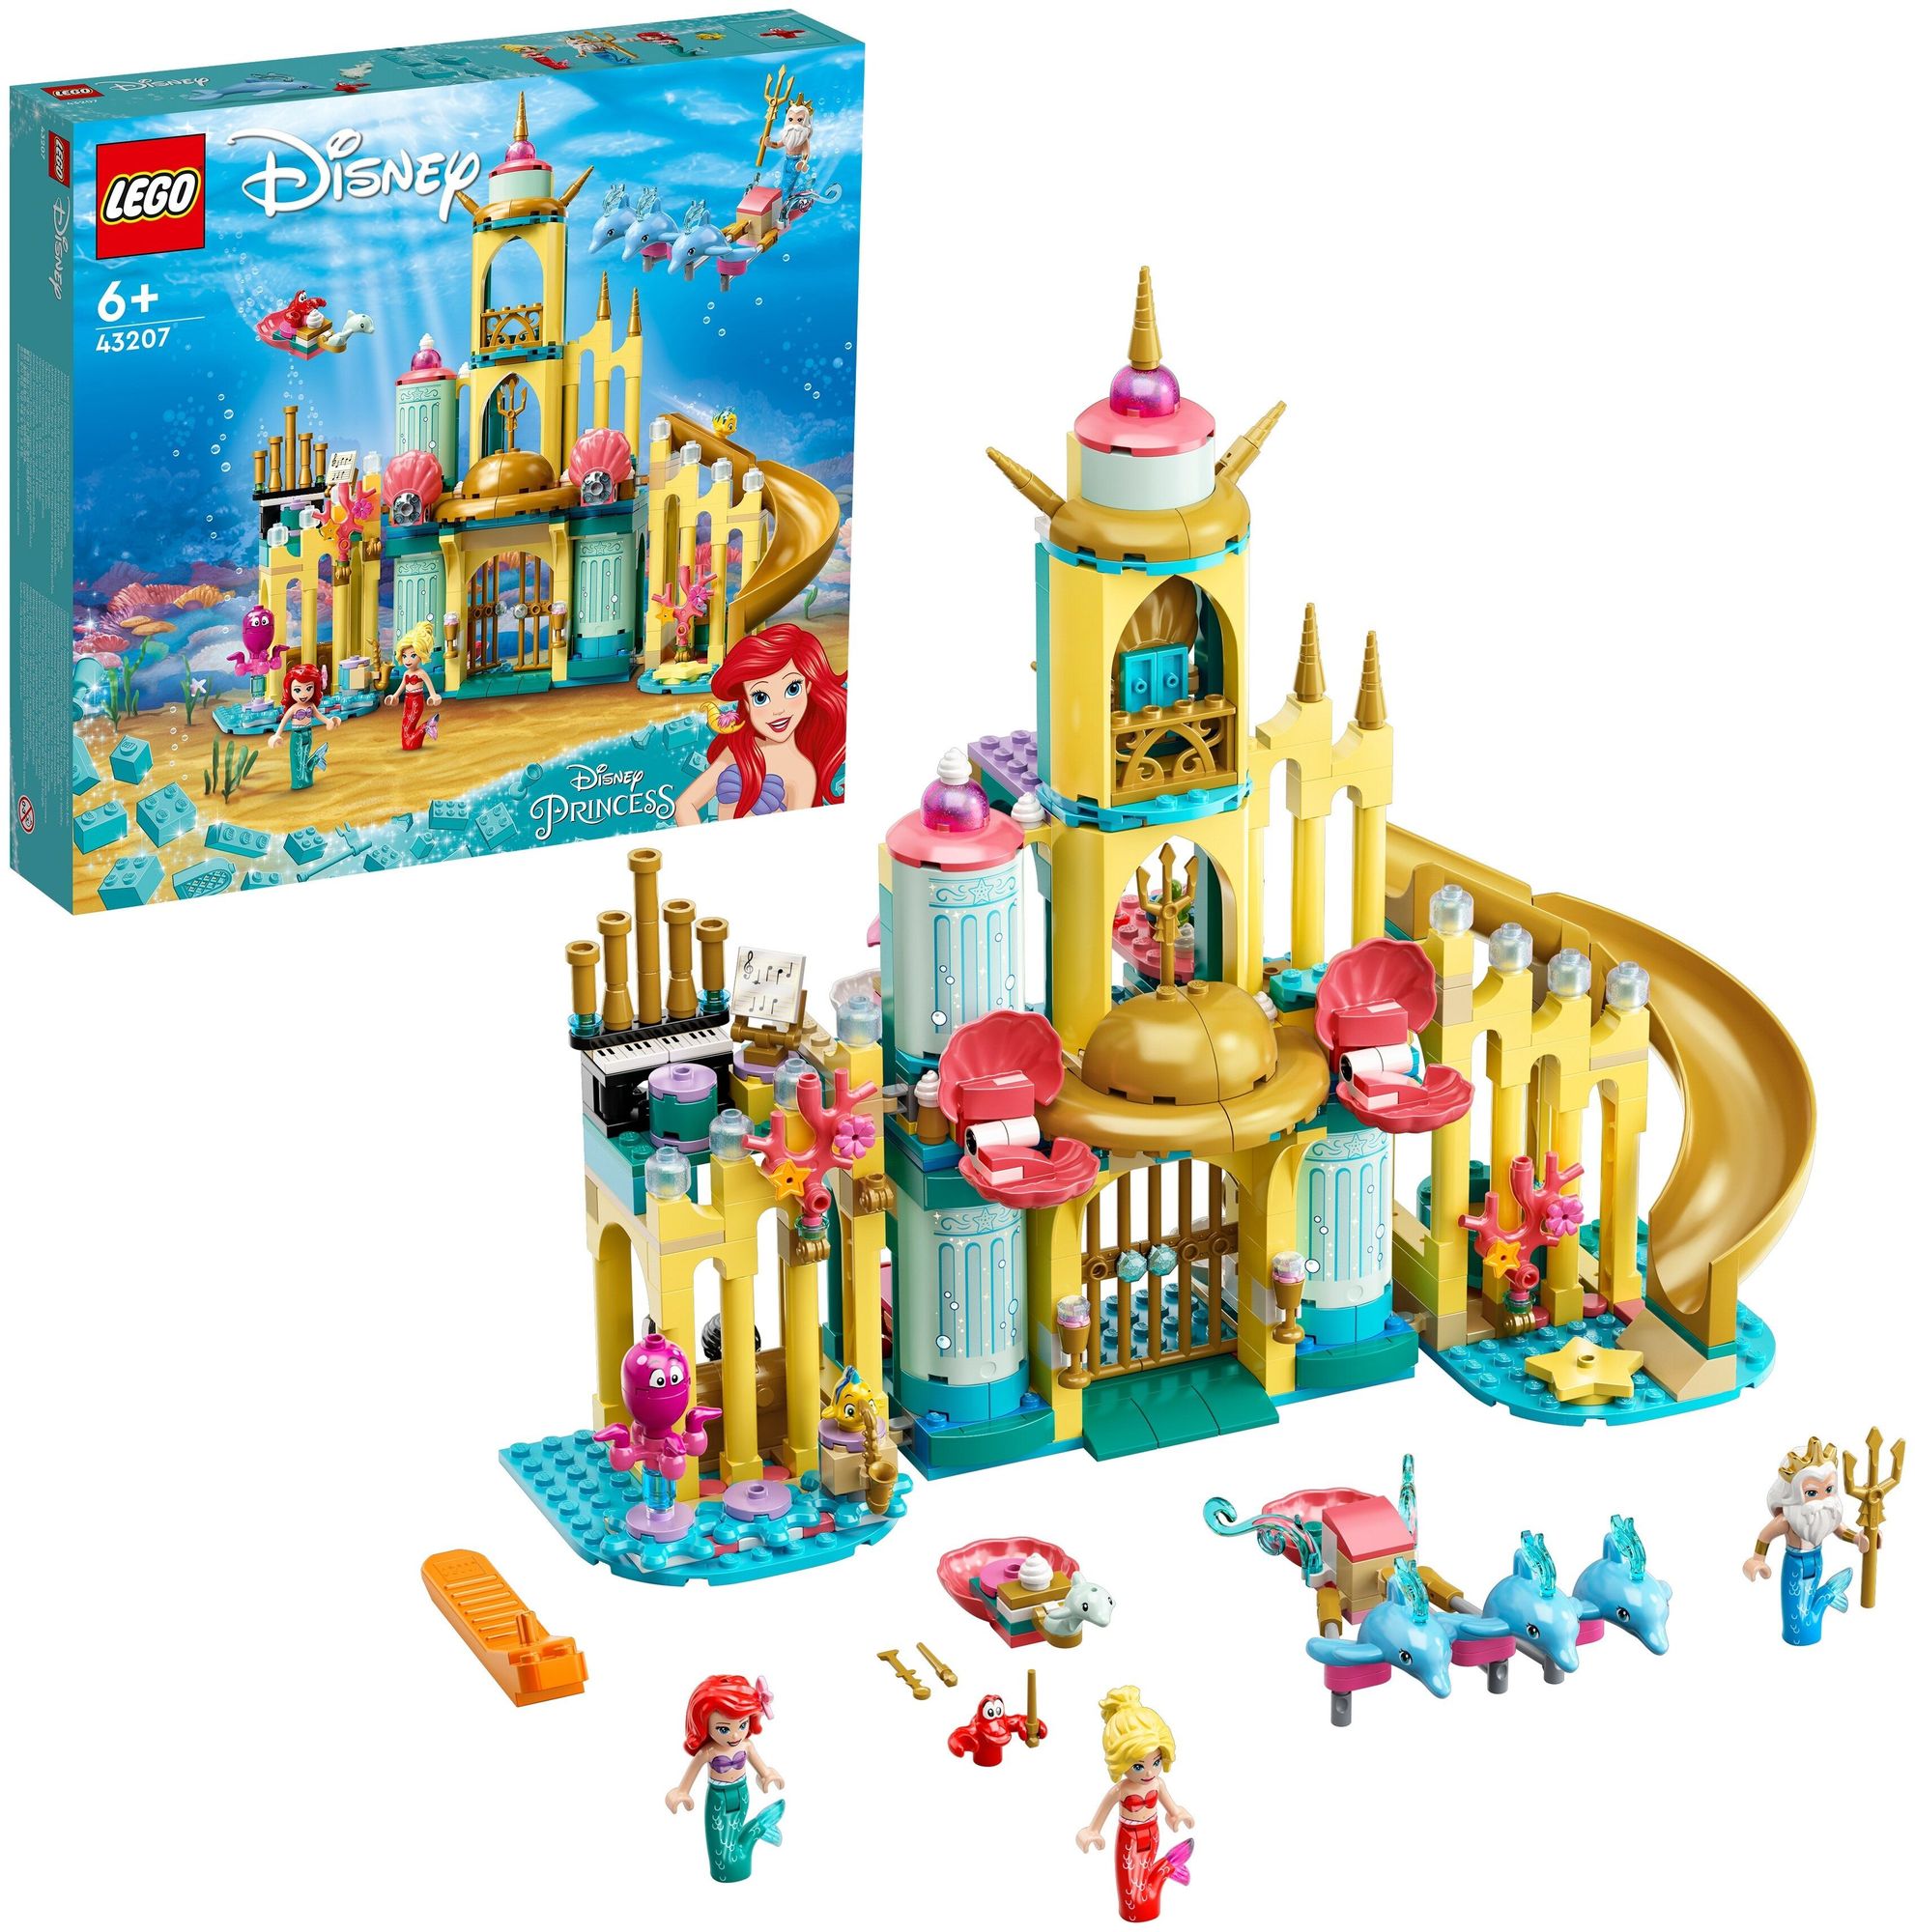 Конструктор LEGO Disney Princess Подводный дворец Ариэль 43207 конструктор lego disney princess 43213 креативные замки